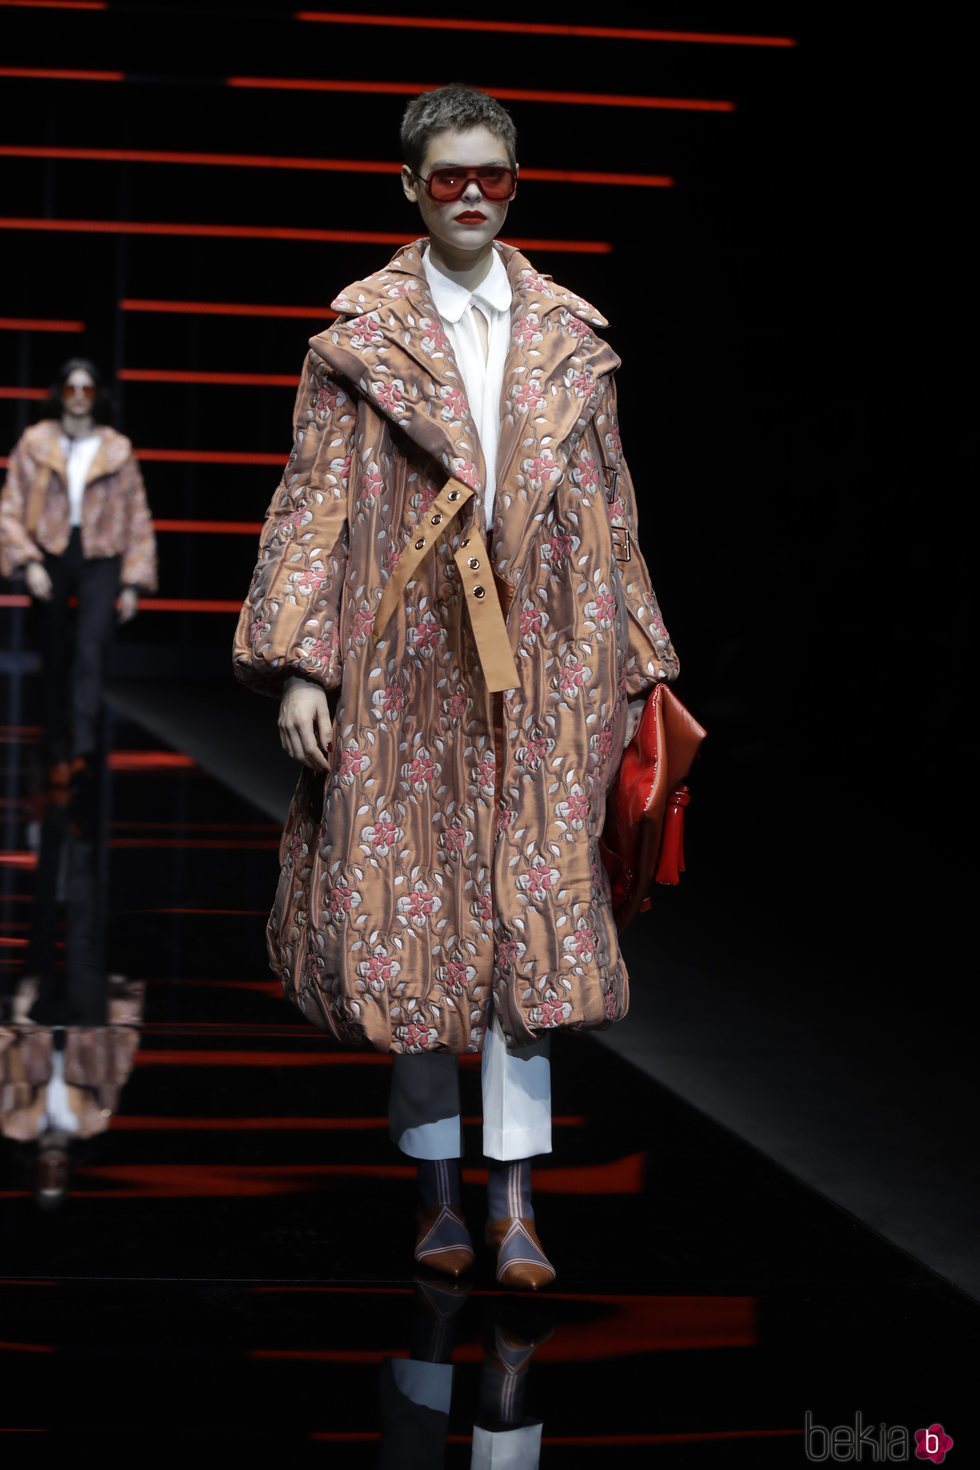 Modelo luciendo un abrigo otoño/invierno 2019/2020 de Armani